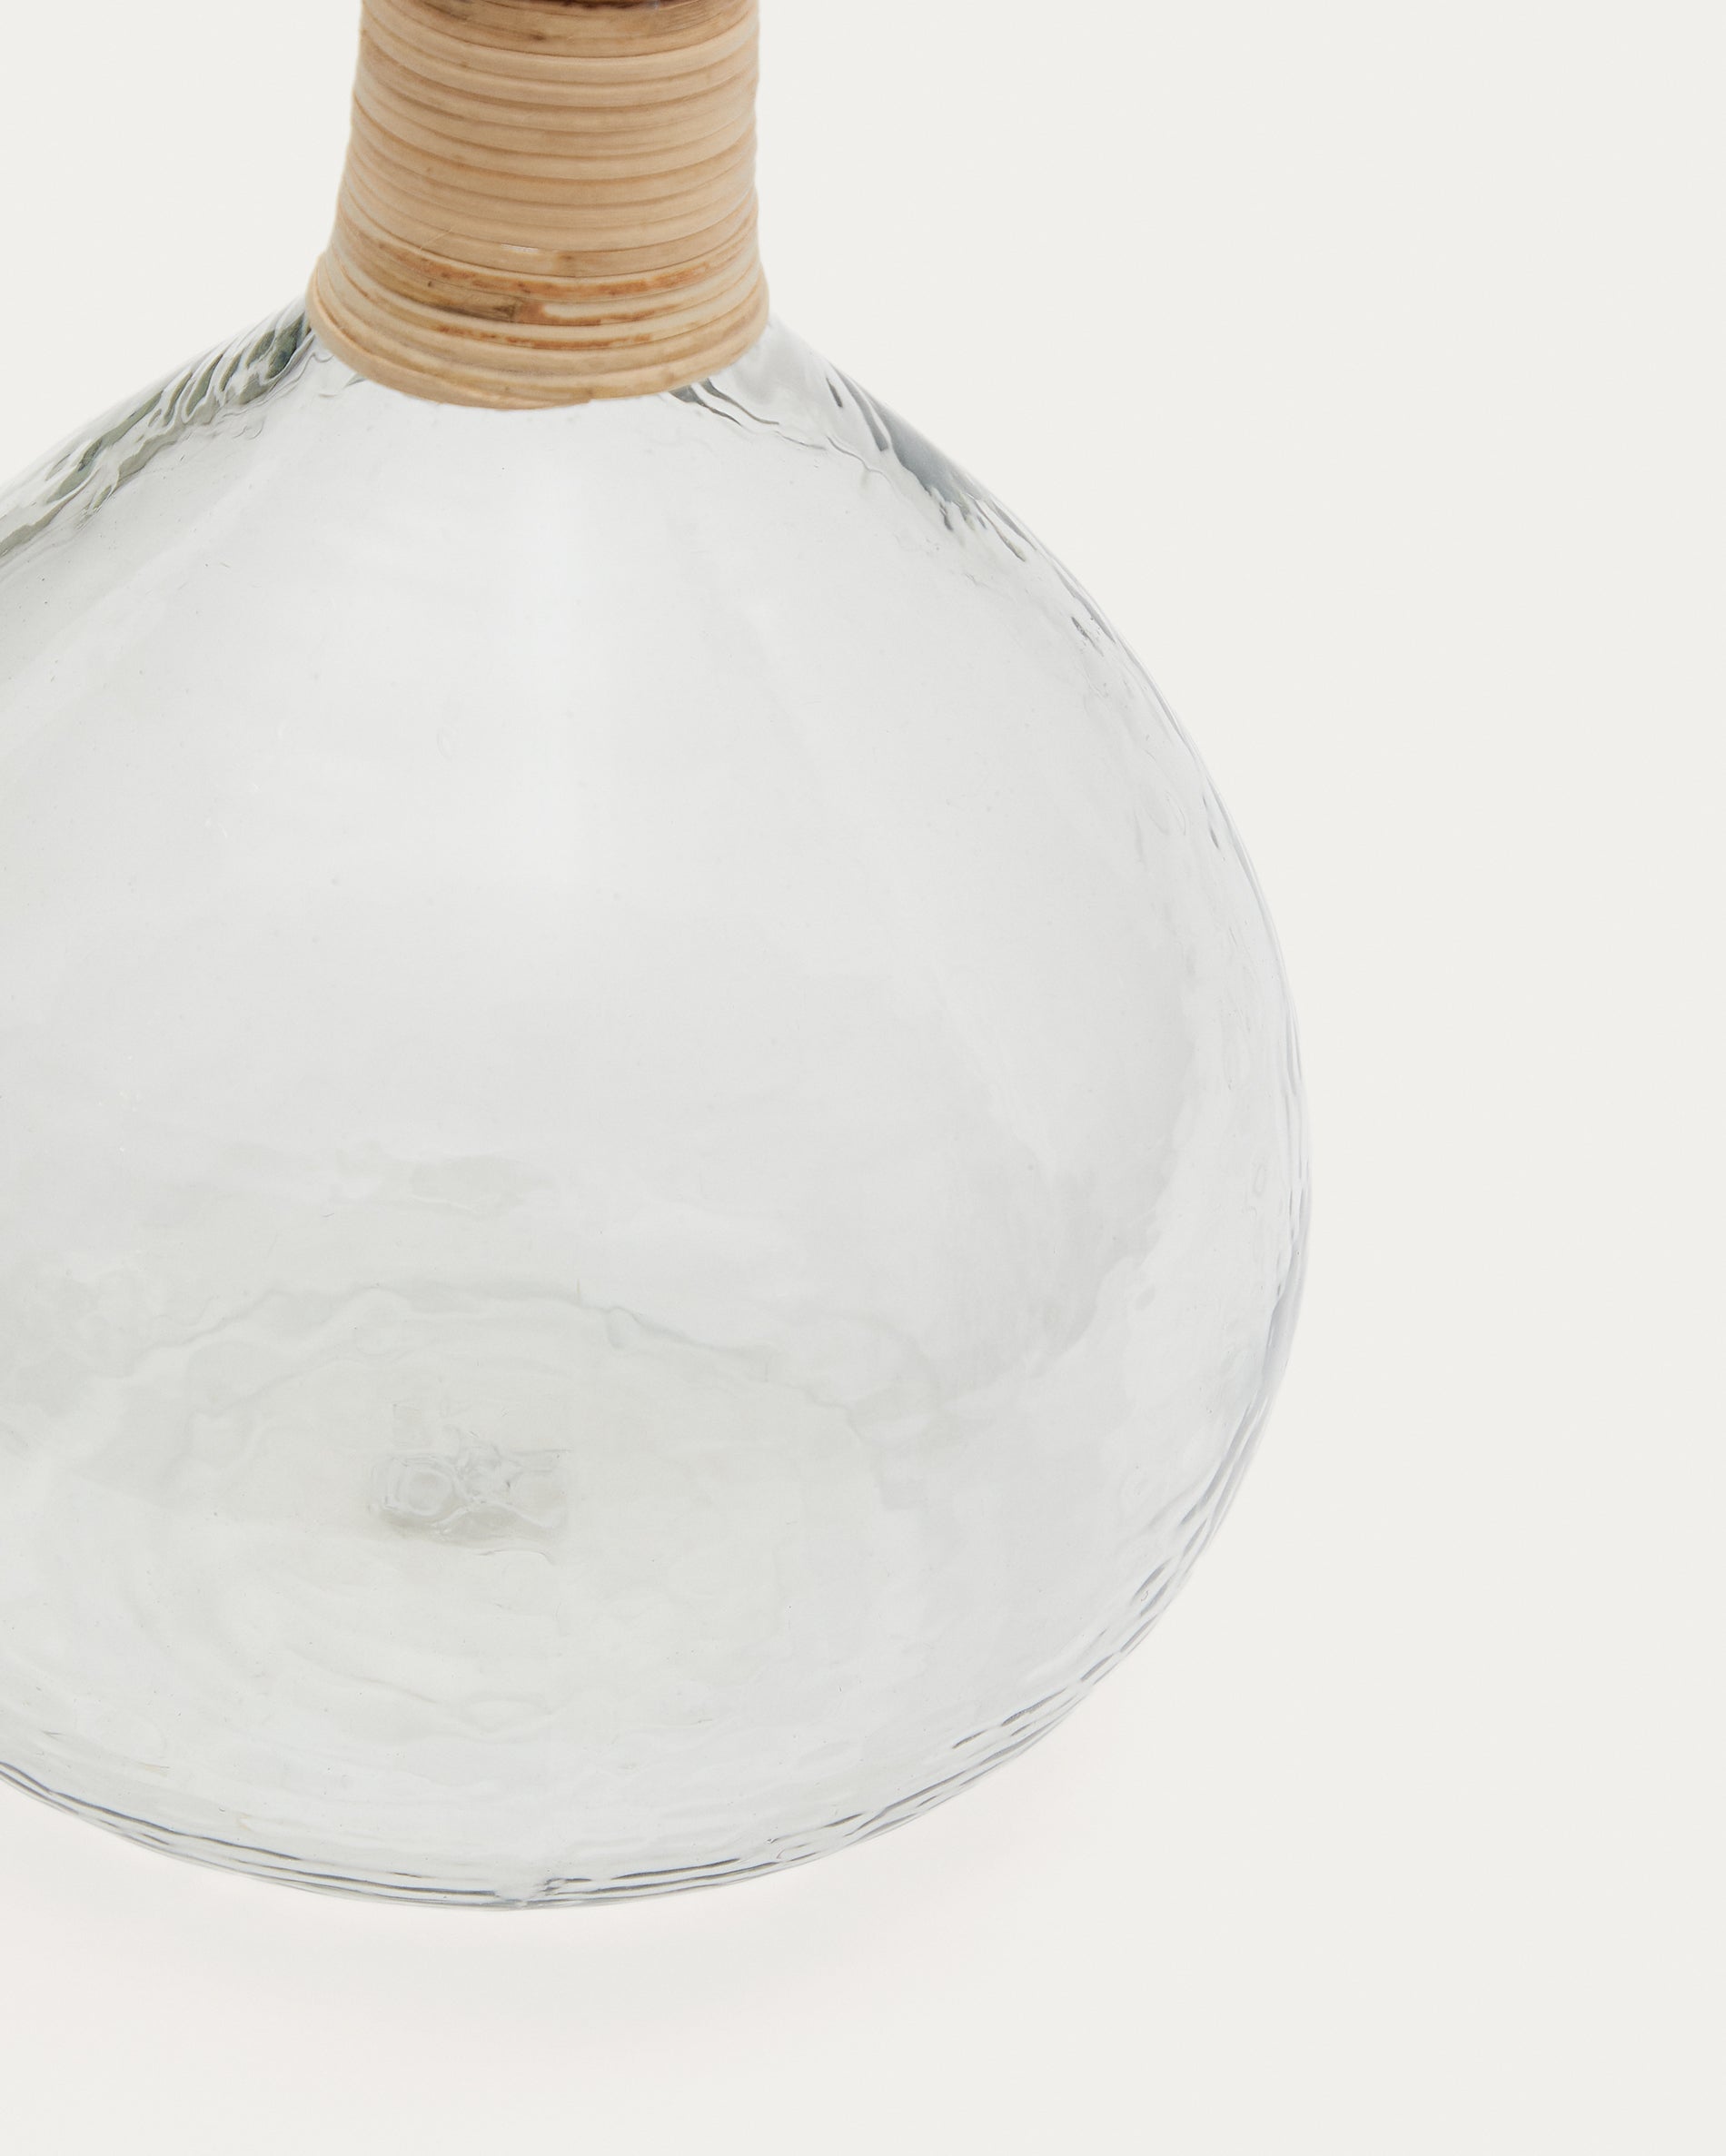 Serlina váza, rattanból és átlátszó újrahasznosított üvegből készült, 30 cm